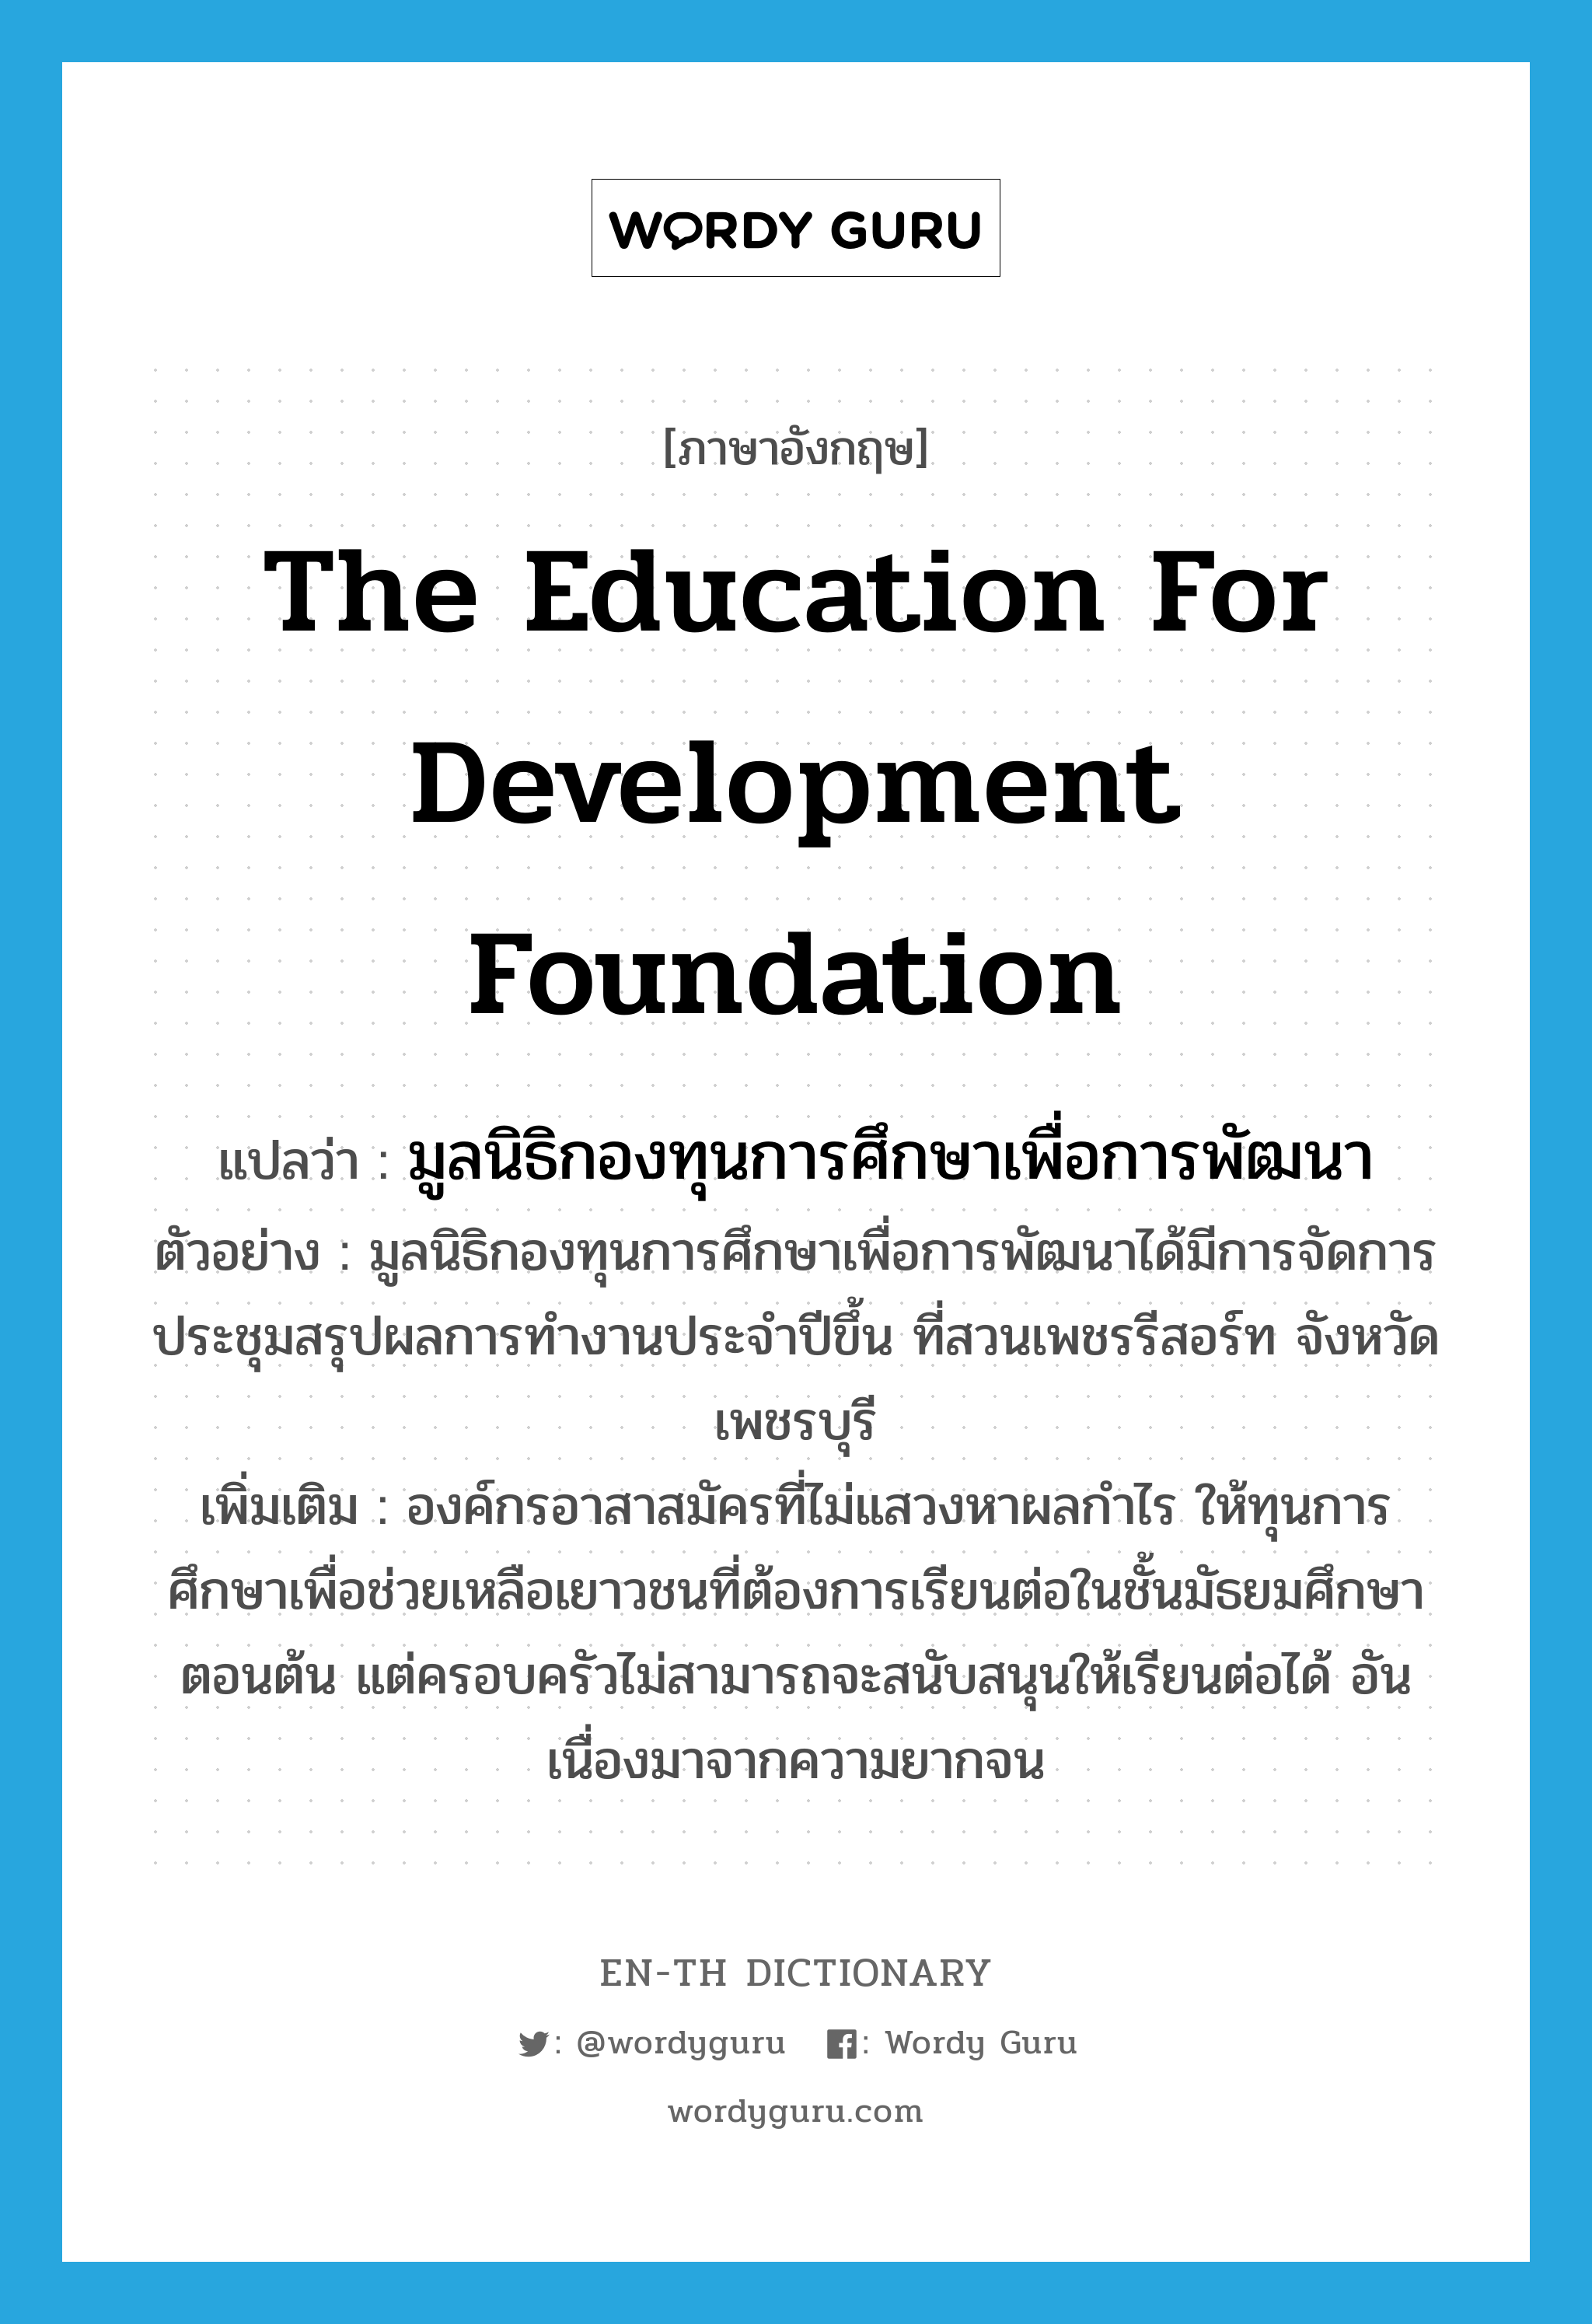 The Education for Development Foundation แปลว่า?, คำศัพท์ภาษาอังกฤษ The Education for Development Foundation แปลว่า มูลนิธิกองทุนการศึกษาเพื่อการพัฒนา ประเภท N ตัวอย่าง มูลนิธิกองทุนการศึกษาเพื่อการพัฒนาได้มีการจัดการประชุมสรุปผลการทำงานประจำปีขึ้น ที่สวนเพชรรีสอร์ท จังหวัดเพชรบุรี เพิ่มเติม องค์กรอาสาสมัครที่ไม่แสวงหาผลกำไร ให้ทุนการศึกษาเพื่อช่วยเหลือเยาวชนที่ต้องการเรียนต่อในชั้นมัธยมศึกษาตอนต้น แต่ครอบครัวไม่สามารถจะสนับสนุนให้เรียนต่อได้ อันเนื่องมาจากความยากจน หมวด N